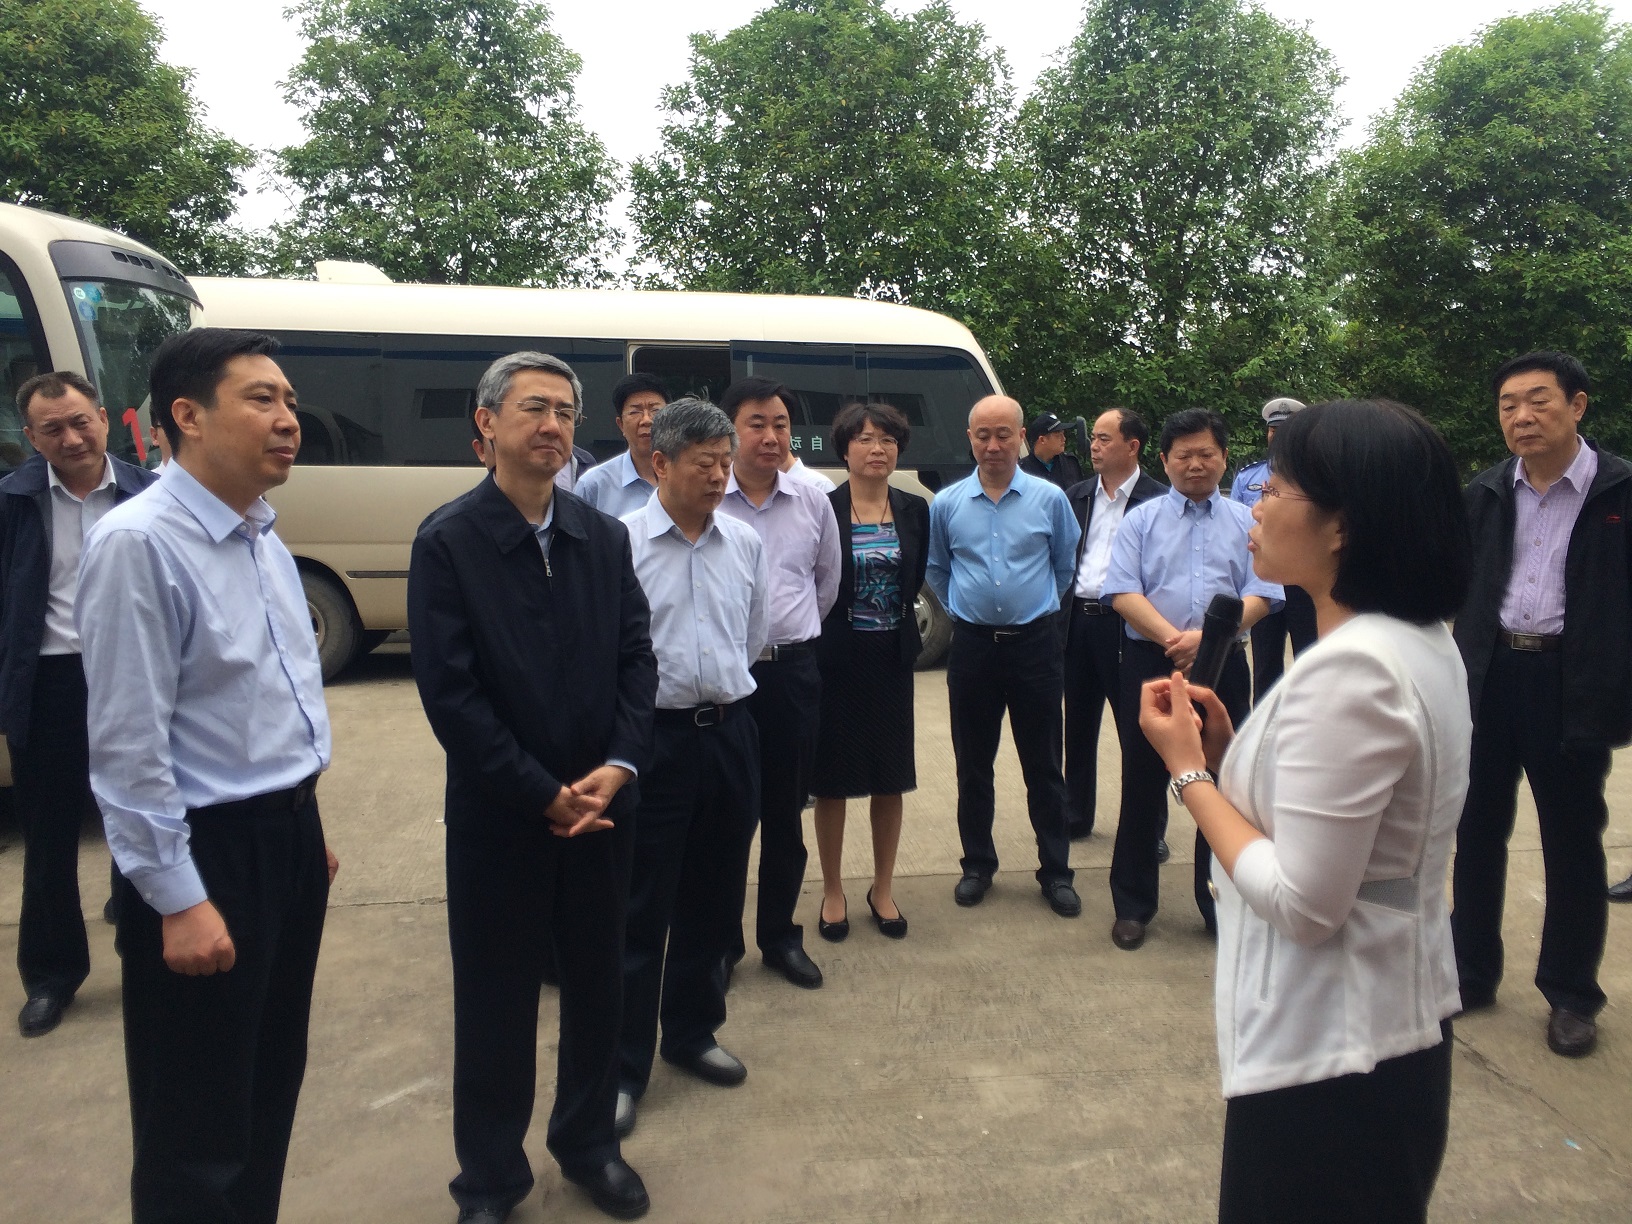 2015年5月6日上午,河南省委副书记邓凯一行20多人在河南省永城市